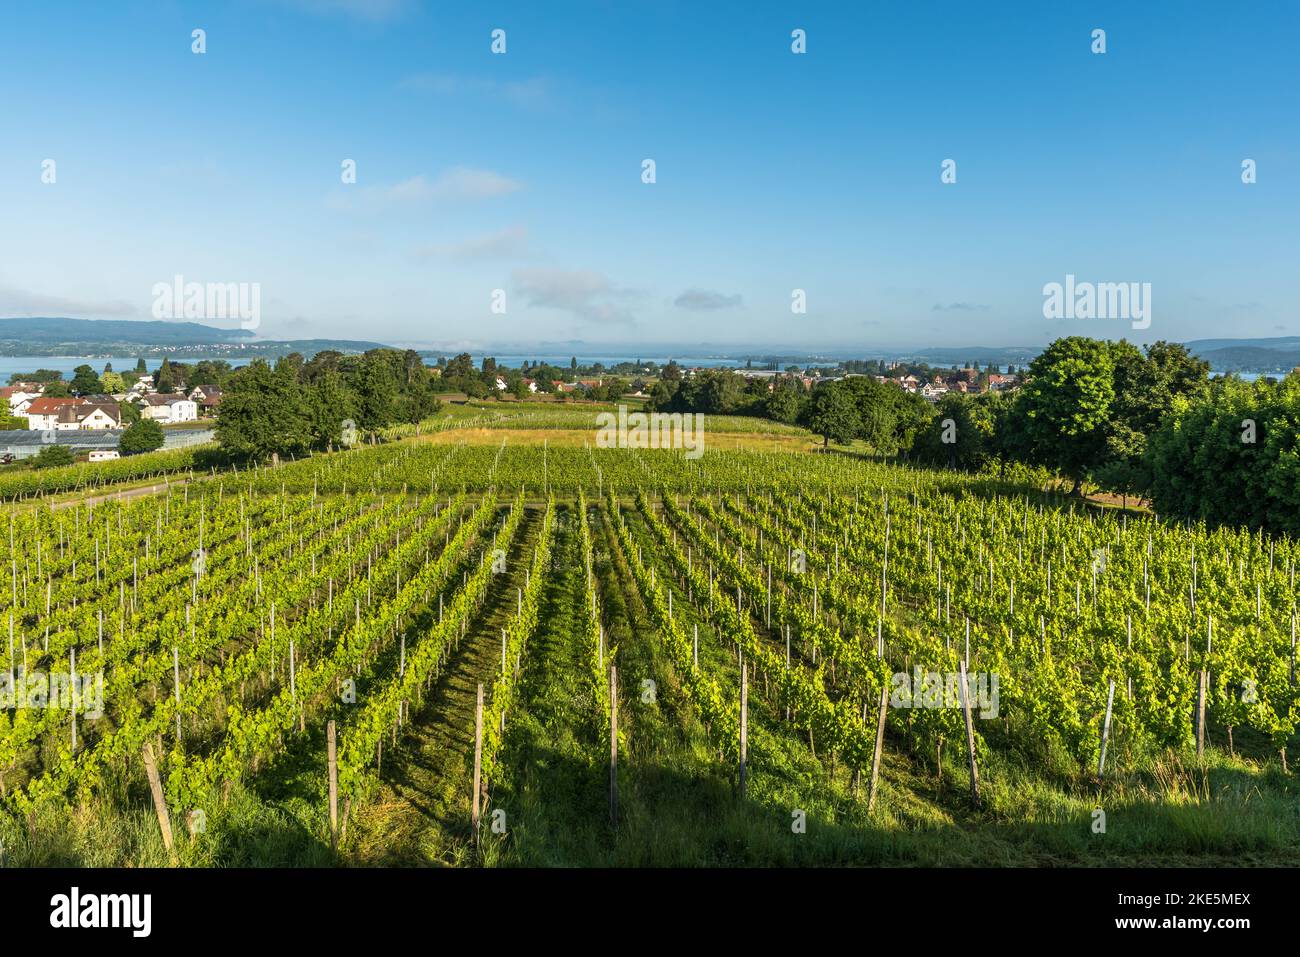 Panoramablick auf einen Weinberg mit grünen Reben, Insel Reichenau, Baden-Württemberg, Deutschland Stockfoto